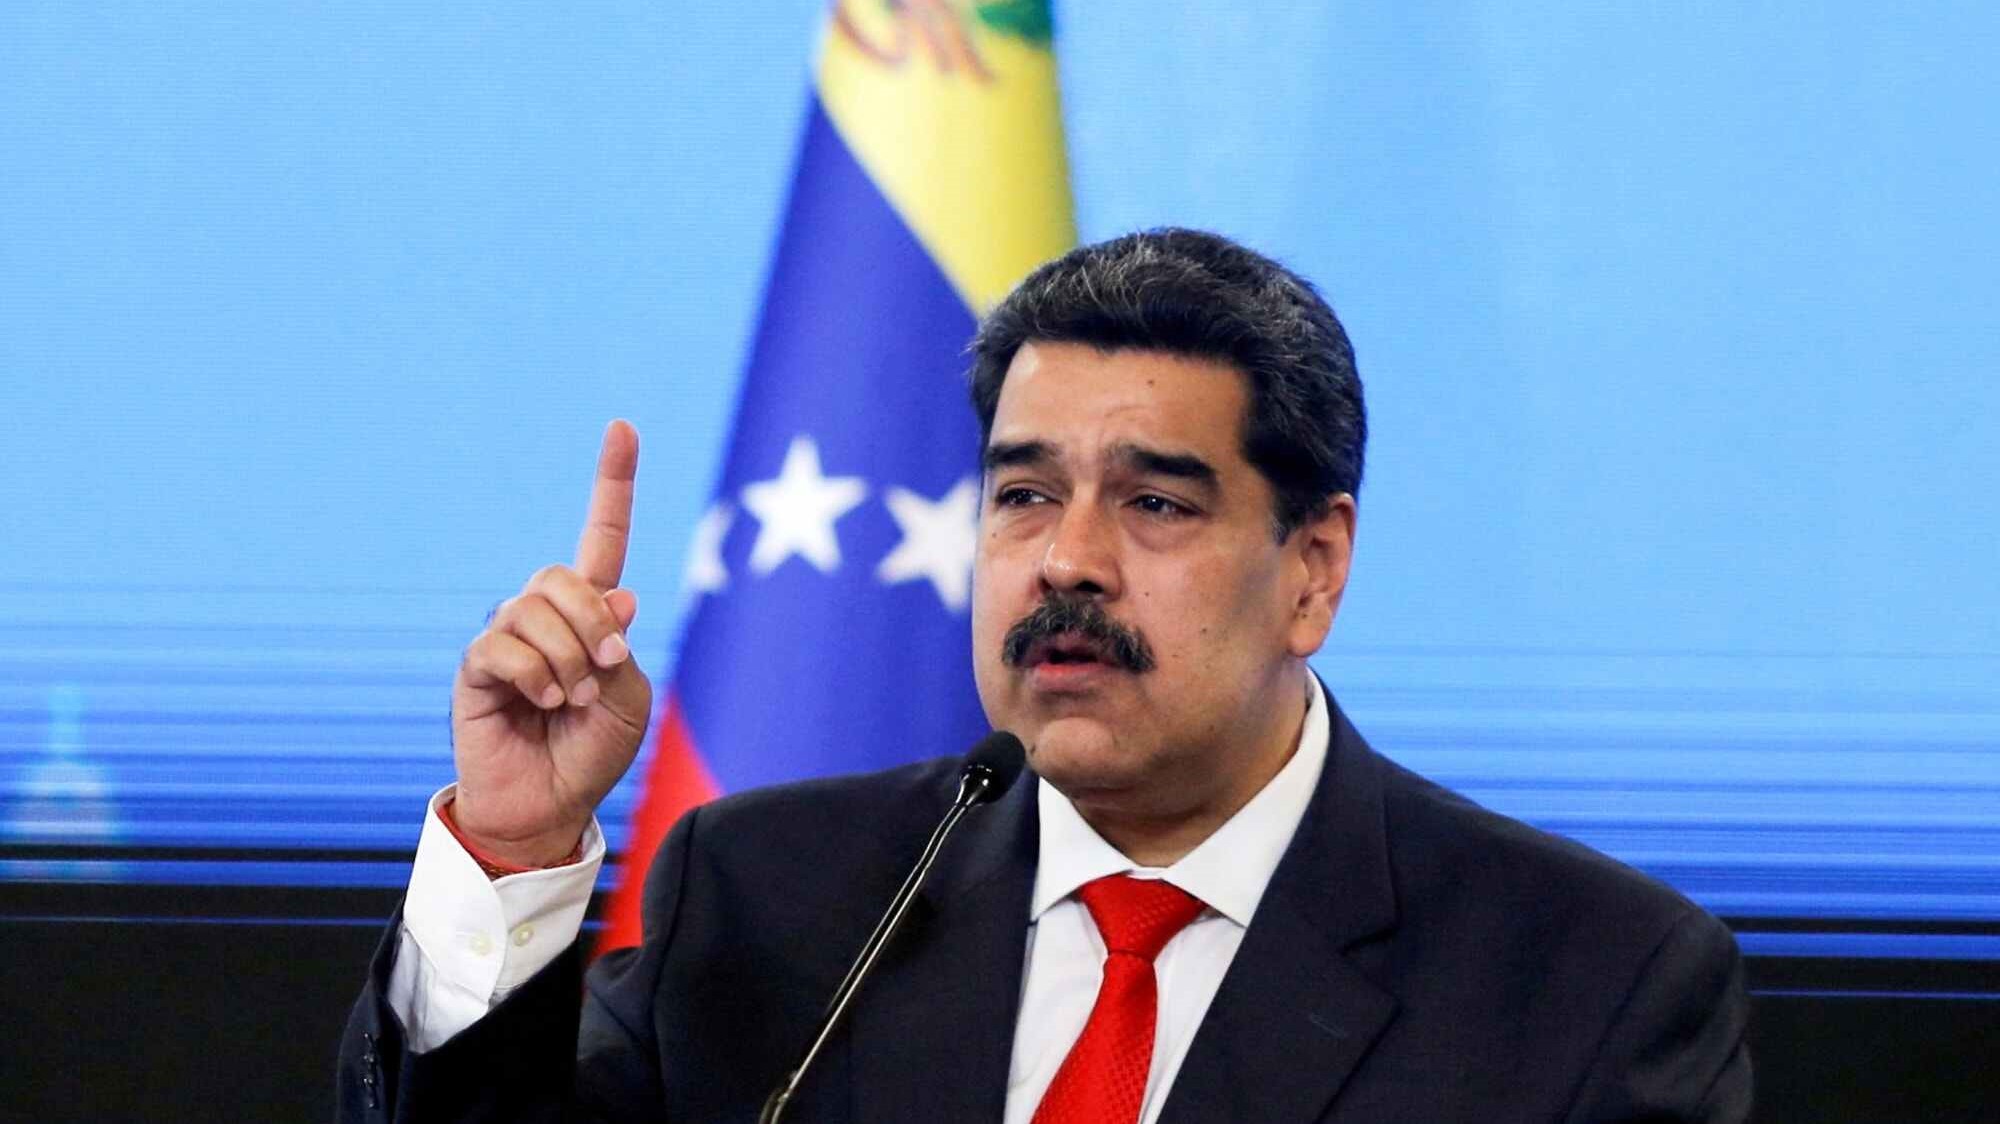 EEUU, Canadá y UE revisarían sanciones si Maduro muestra “avances significativos” en negociaciones